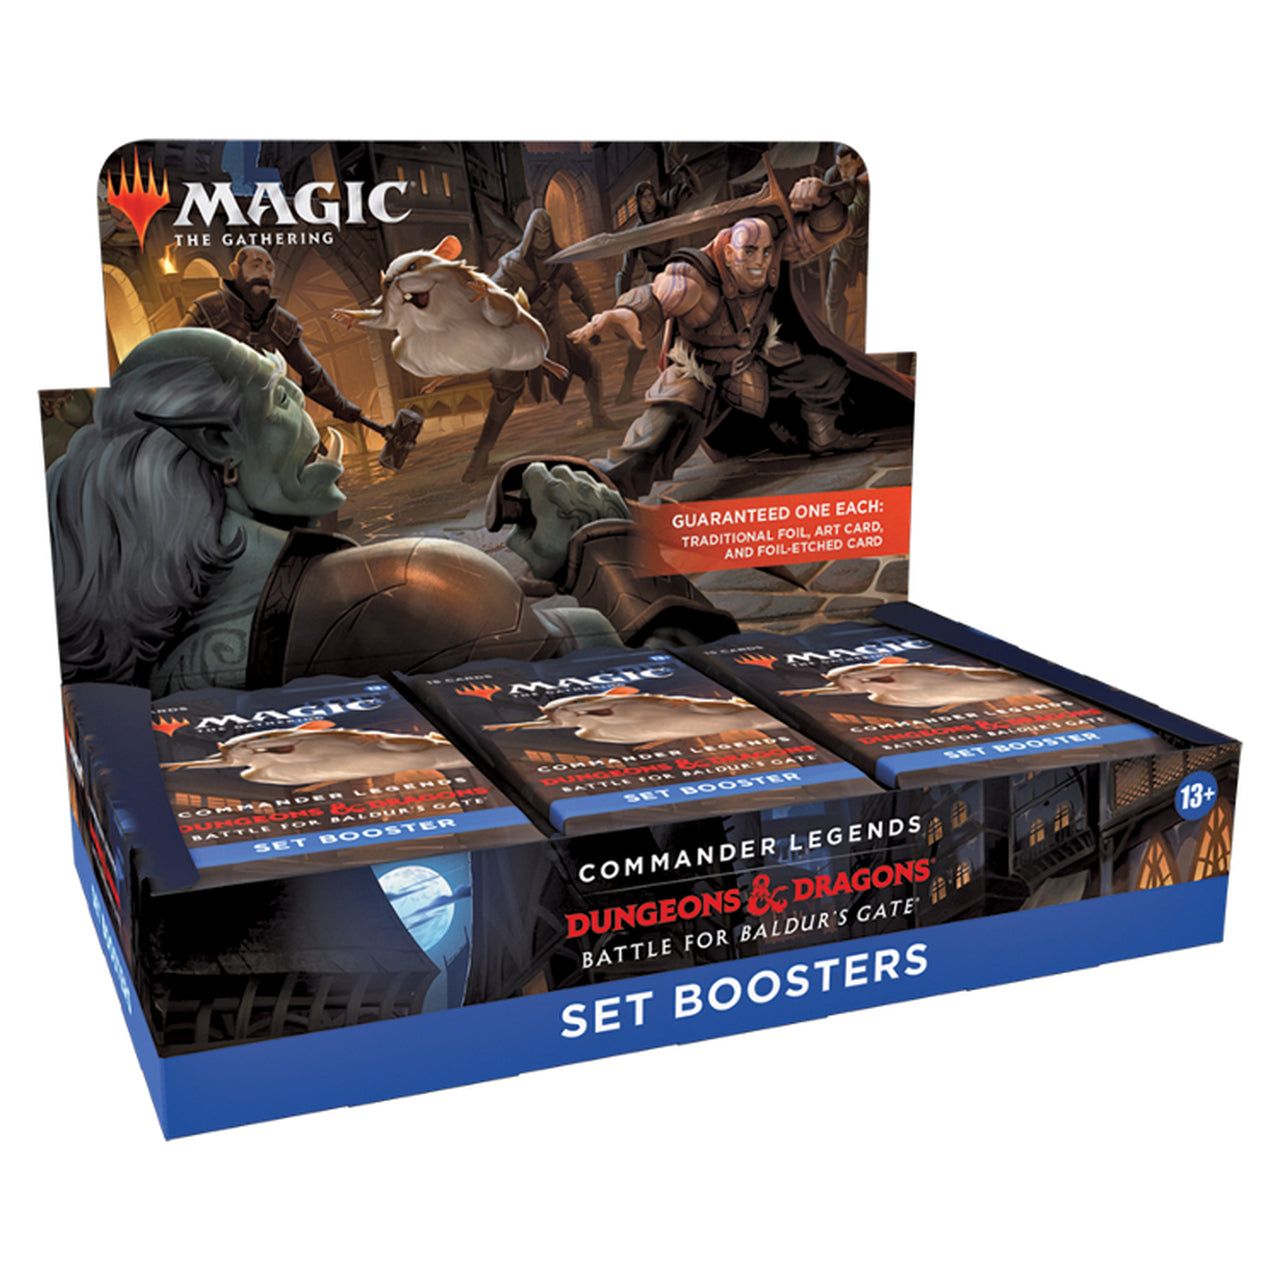 MTG - Commander Legends Dungeons & Dragons Battle for Baldur's Gate Sealed Set Booster Box (18 Booster Packs)